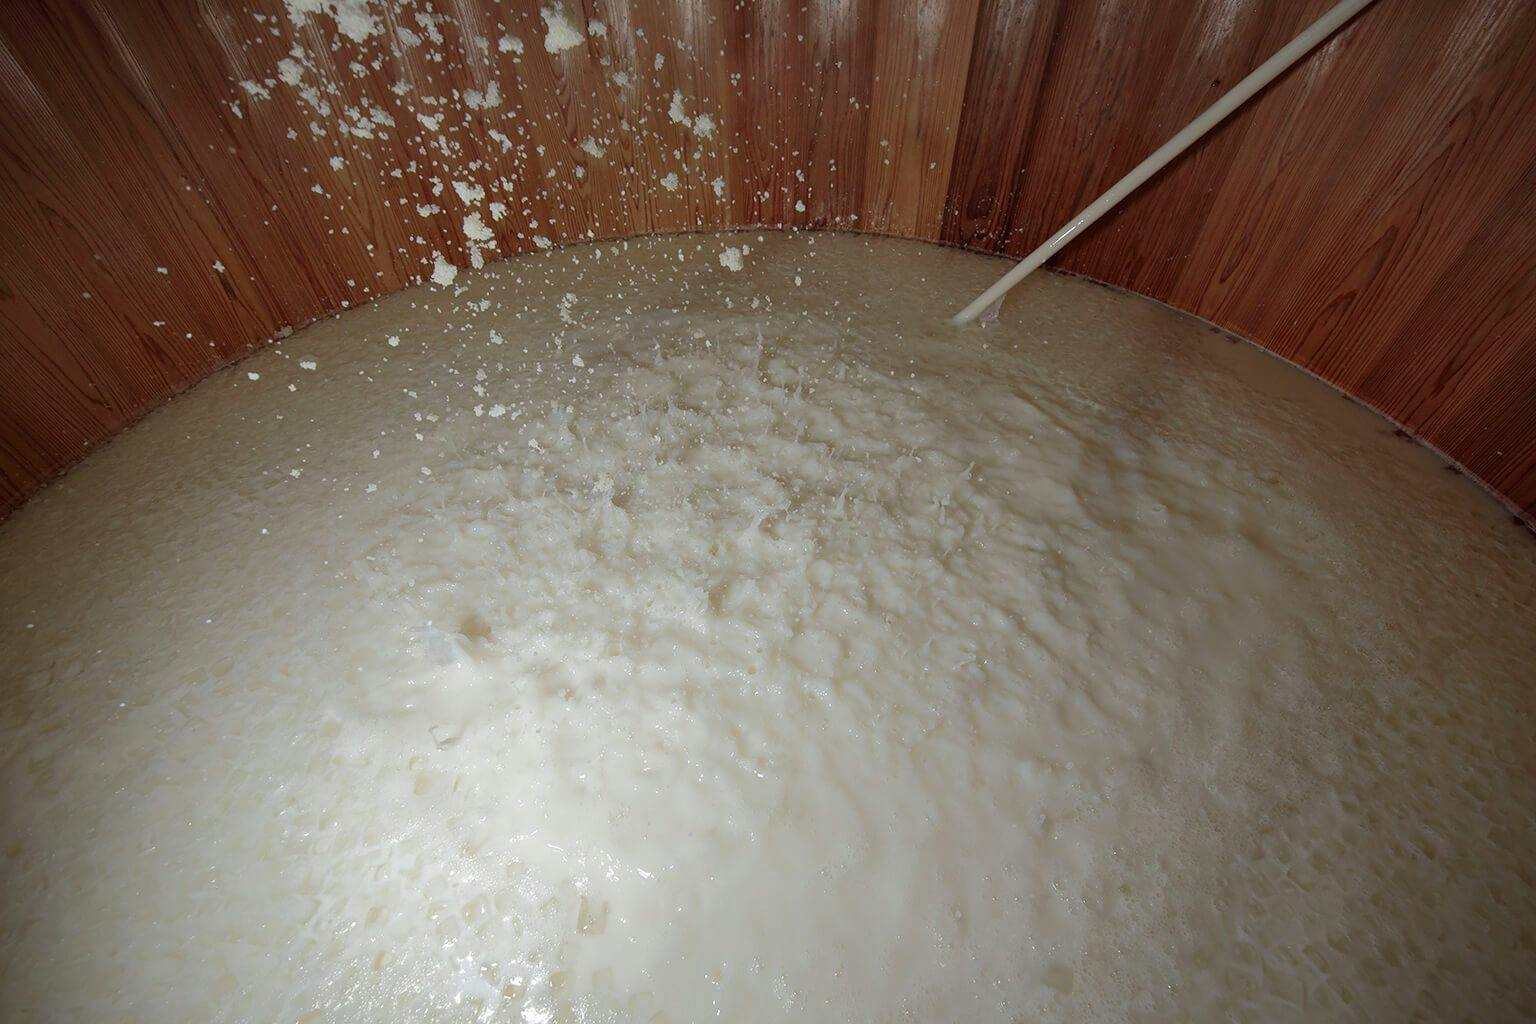 Brewing sake in wooden tanks